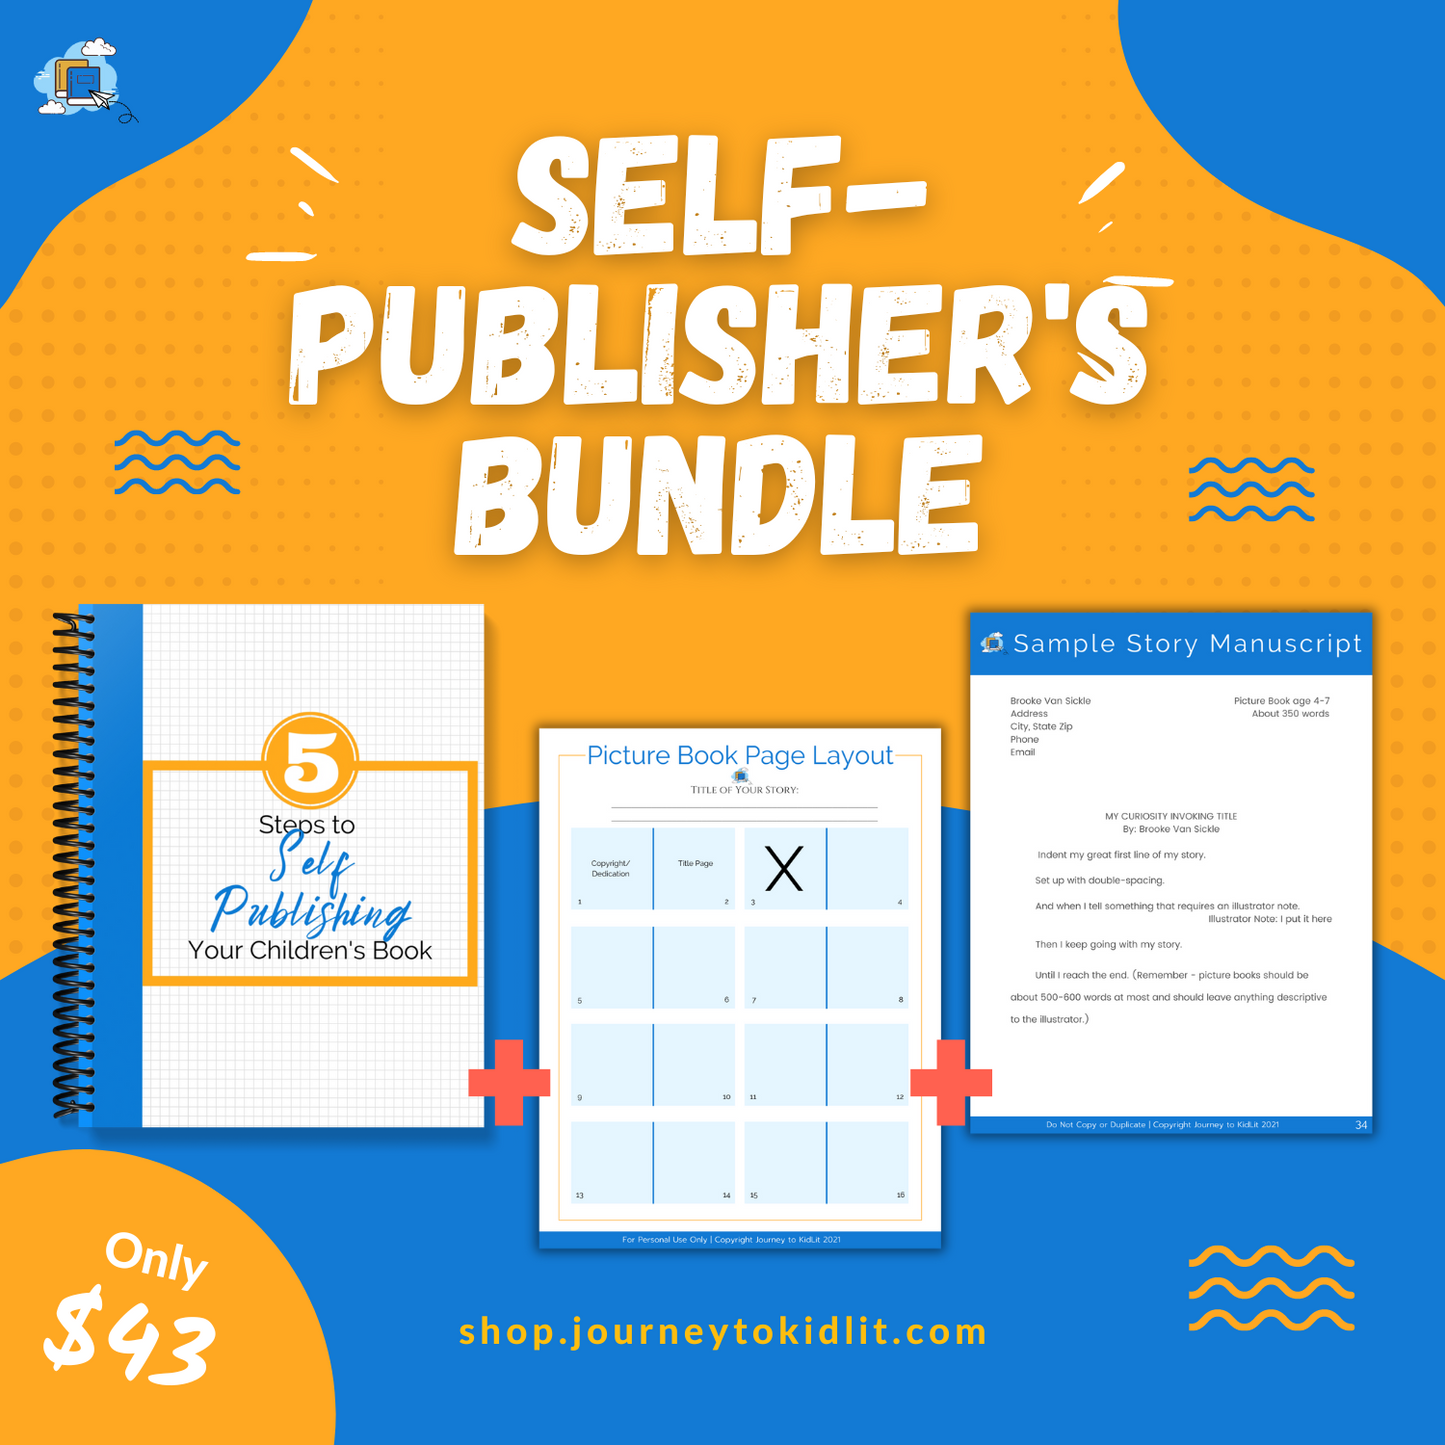 Self Publish Your Children's Book | Exclusive Bundle Sale